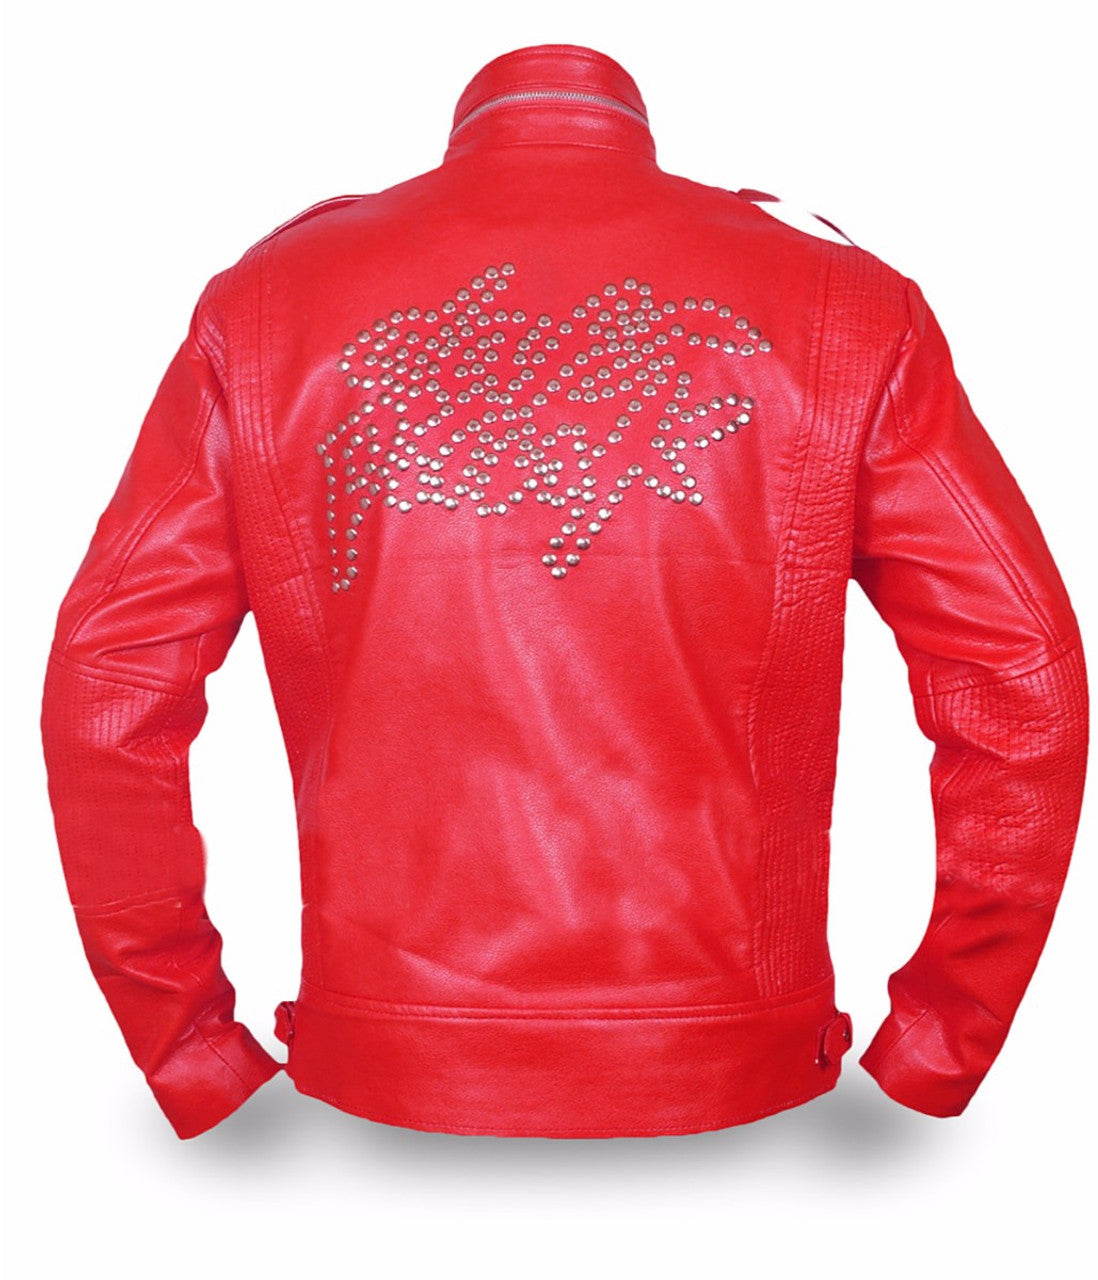 daft punk leather jacket men's leather jacket red biker leather jacket men's red leather jacket daft punk red jacket genuine leather jacket handmade leather jacket for men winter jacket men